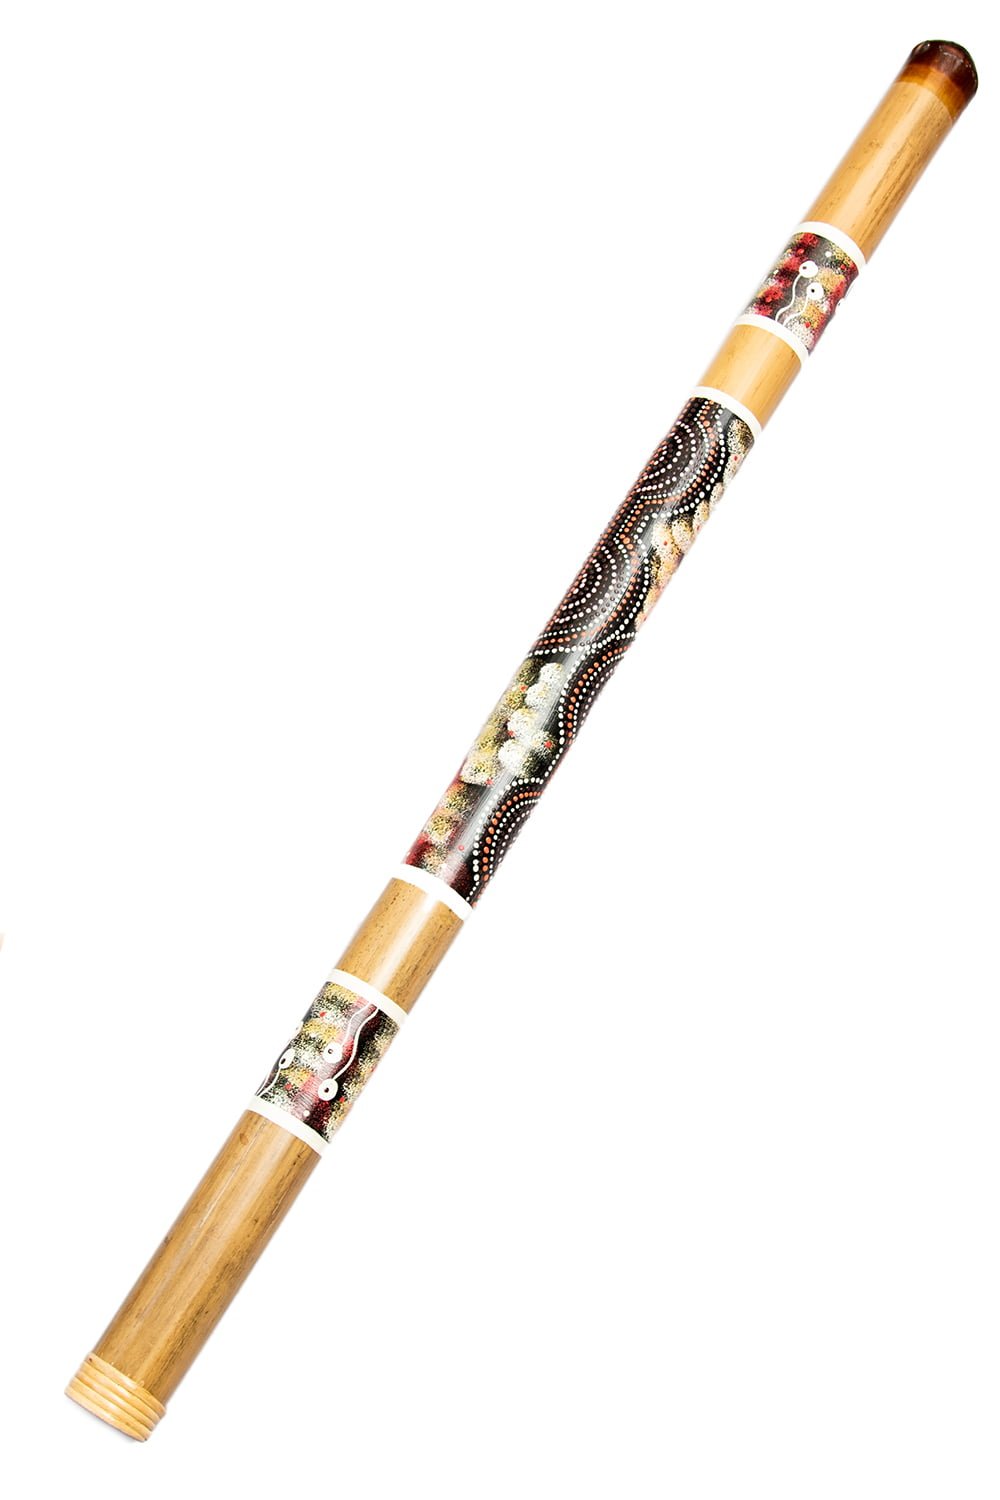 ハンドペインティング バンブーディジュリドゥ 120cm / オーストラリア インドネシア 楽器 管楽器 民族楽器 アボリジニ ディジリドゥ イ